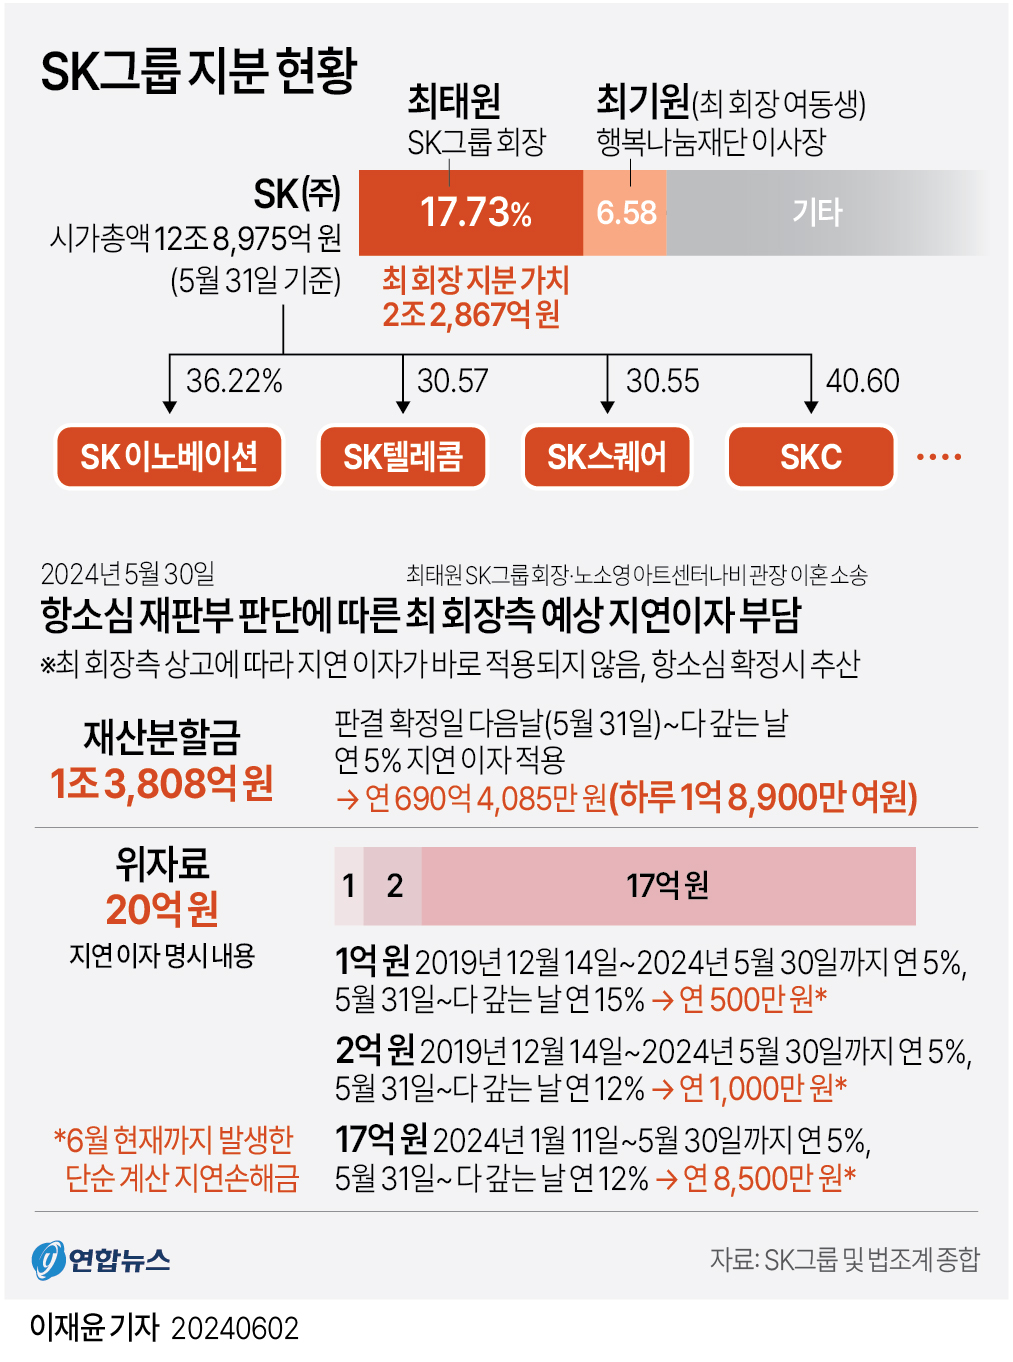 [그래픽] SK그룹 지분 현황